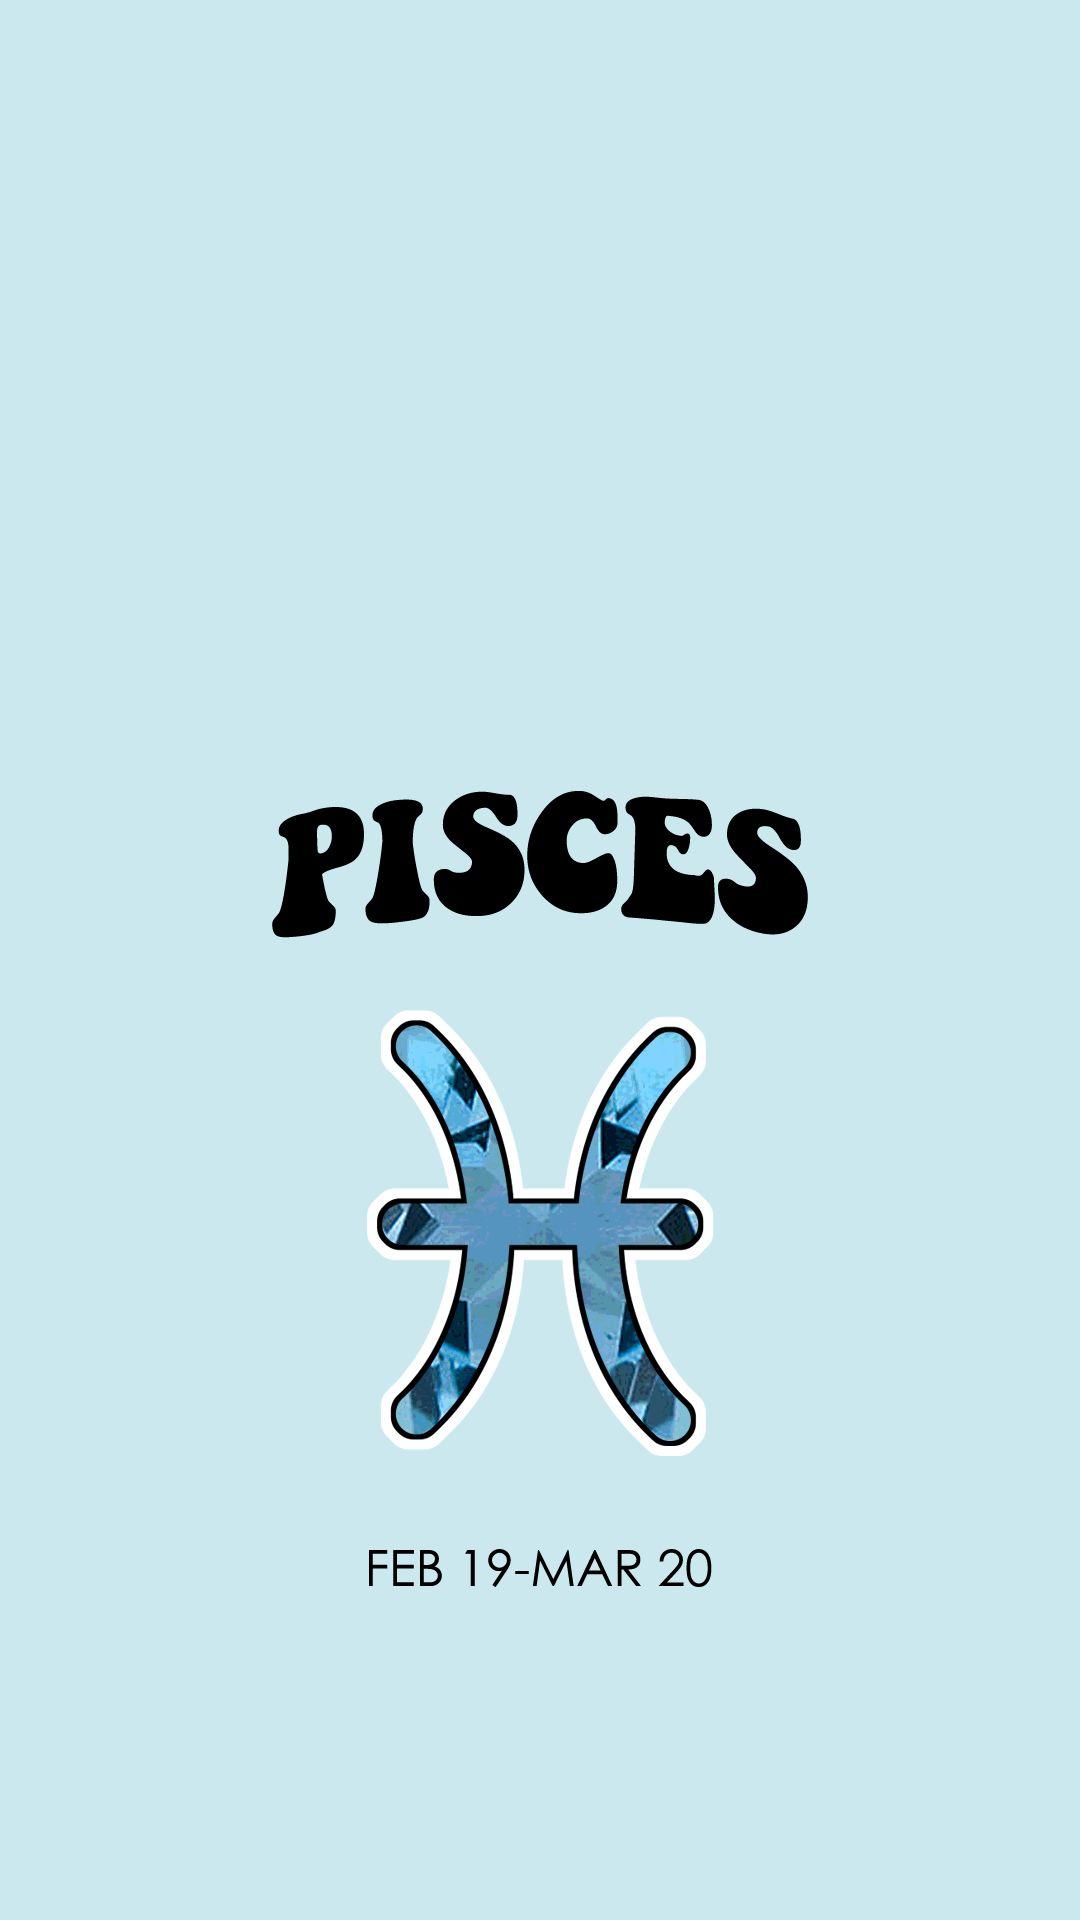 Pisces Zodiac Sign Wallpaper - Izulkafli15iskl